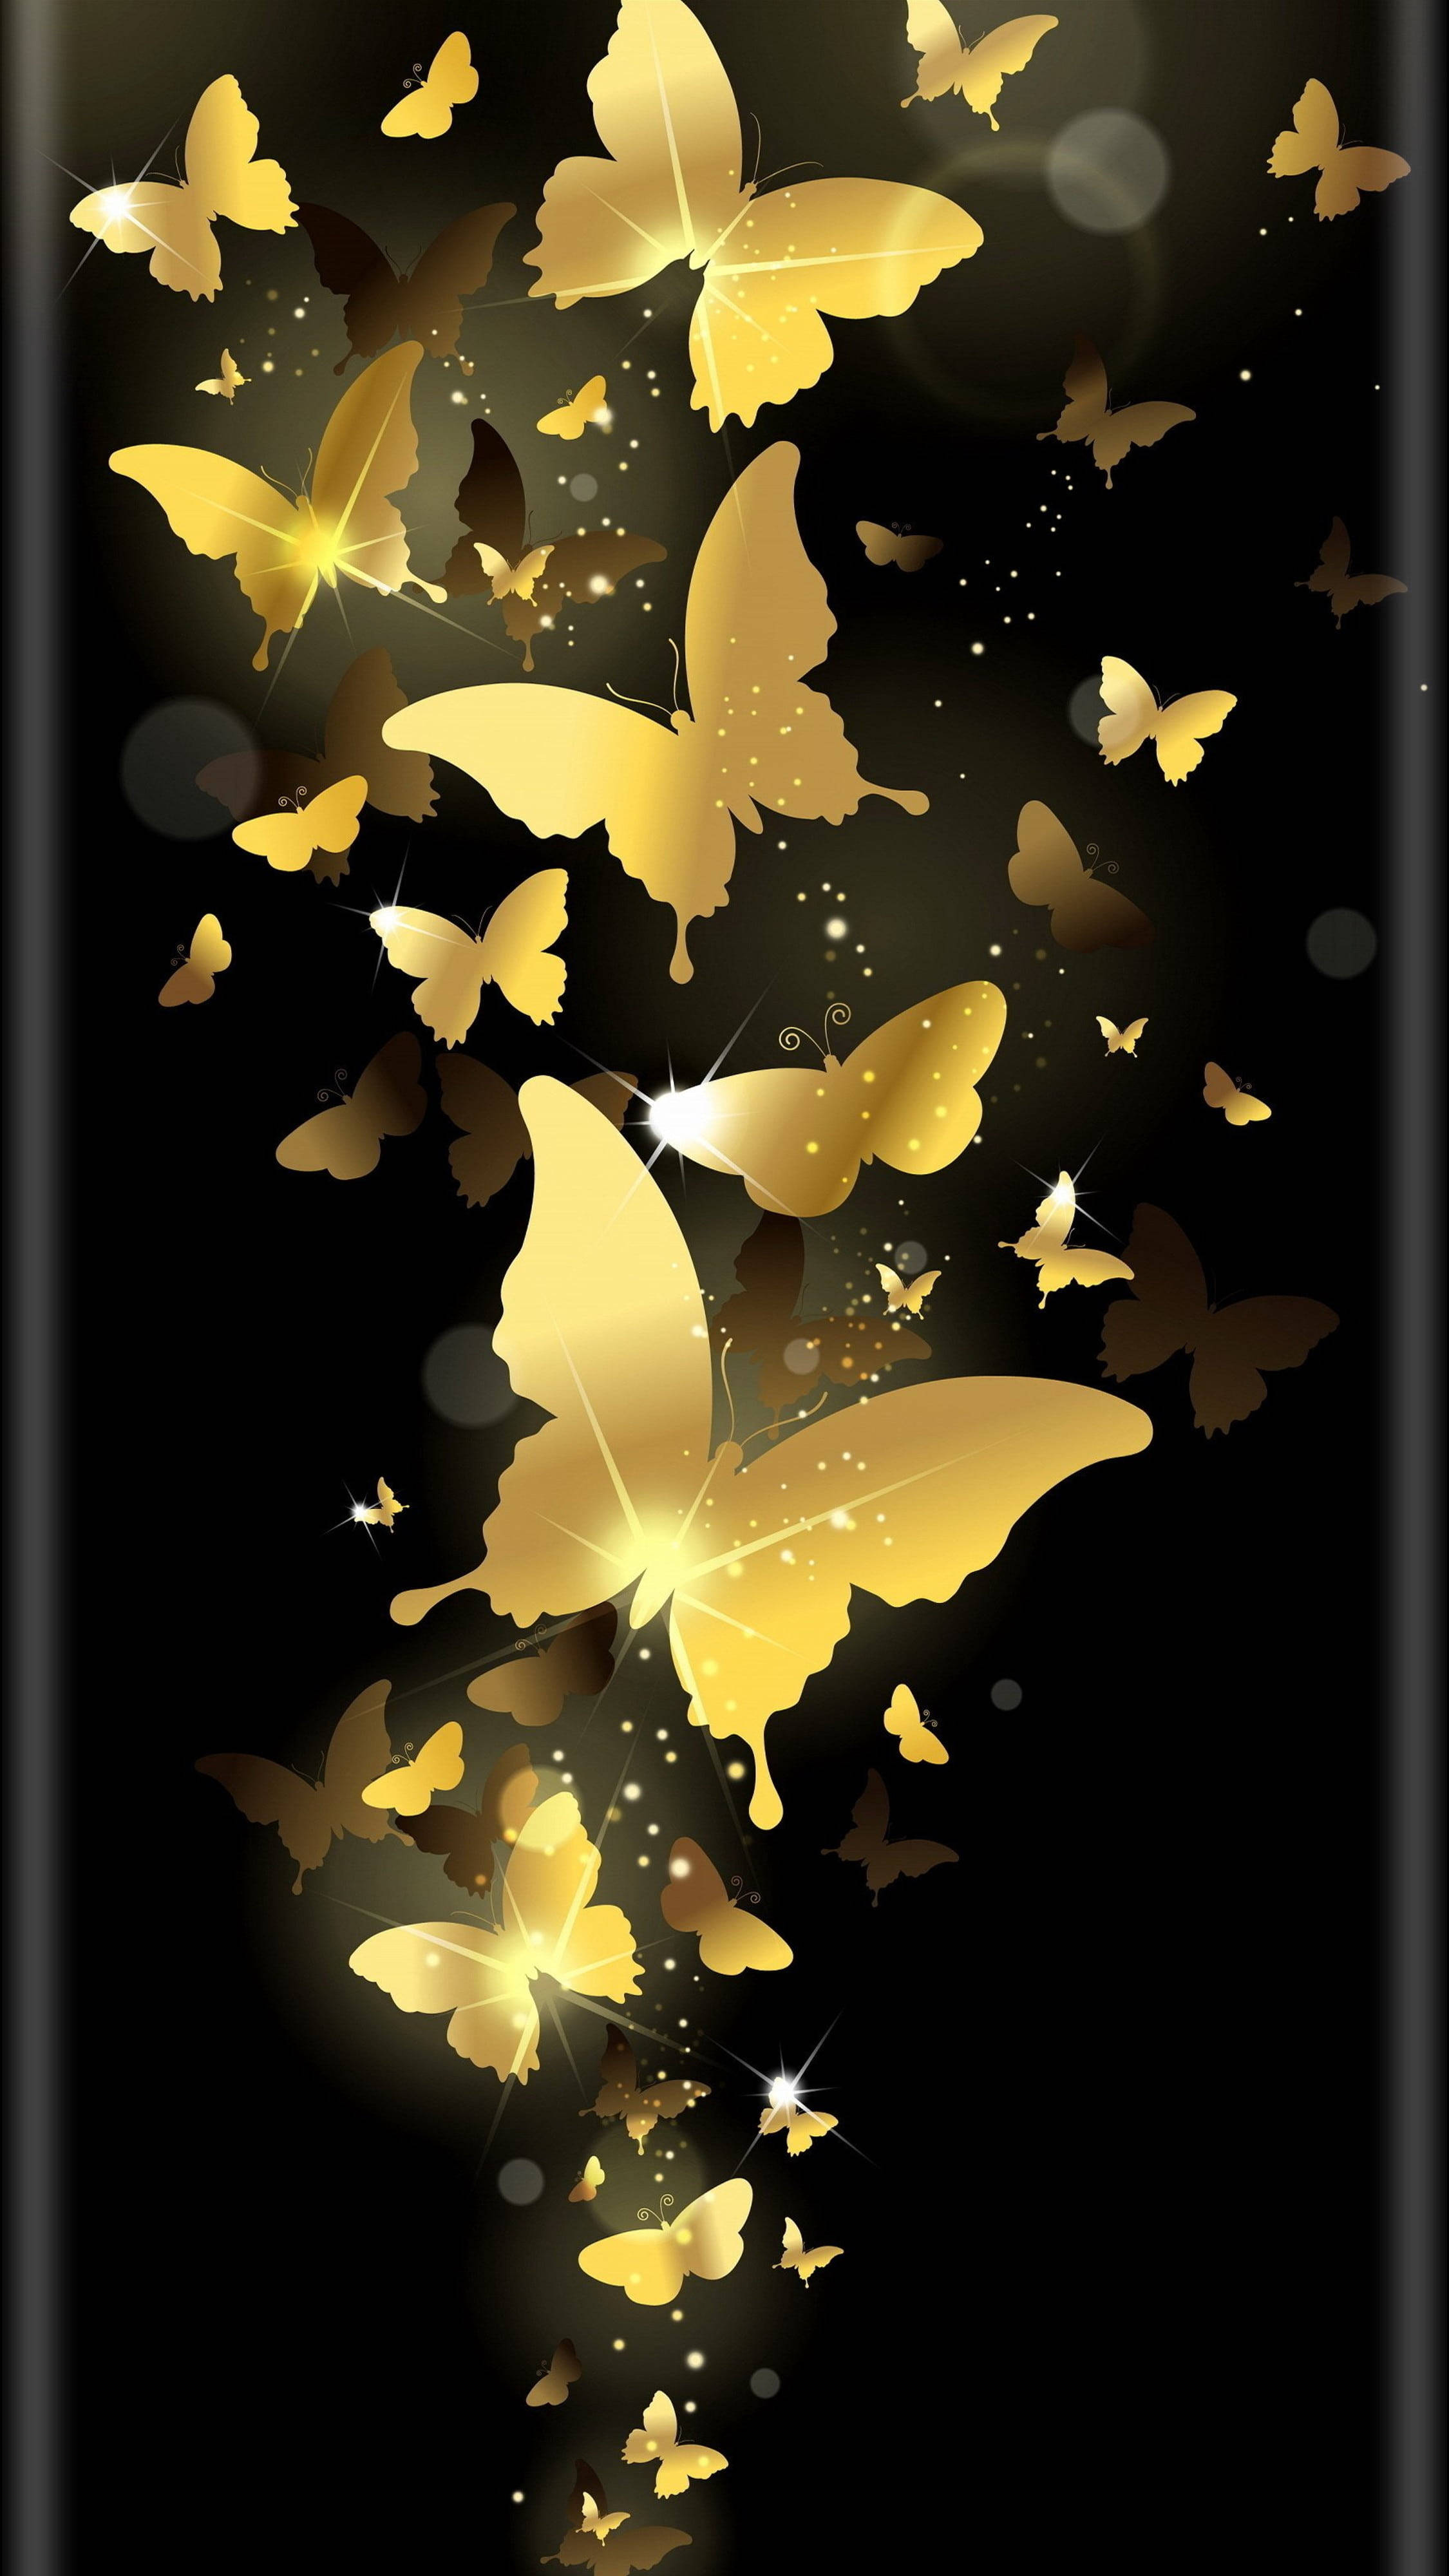 Обложка на экран телефона. Красивый фон на телефон. Фотообои телефон. Заставка бабочки. Стильные обои на телефон.